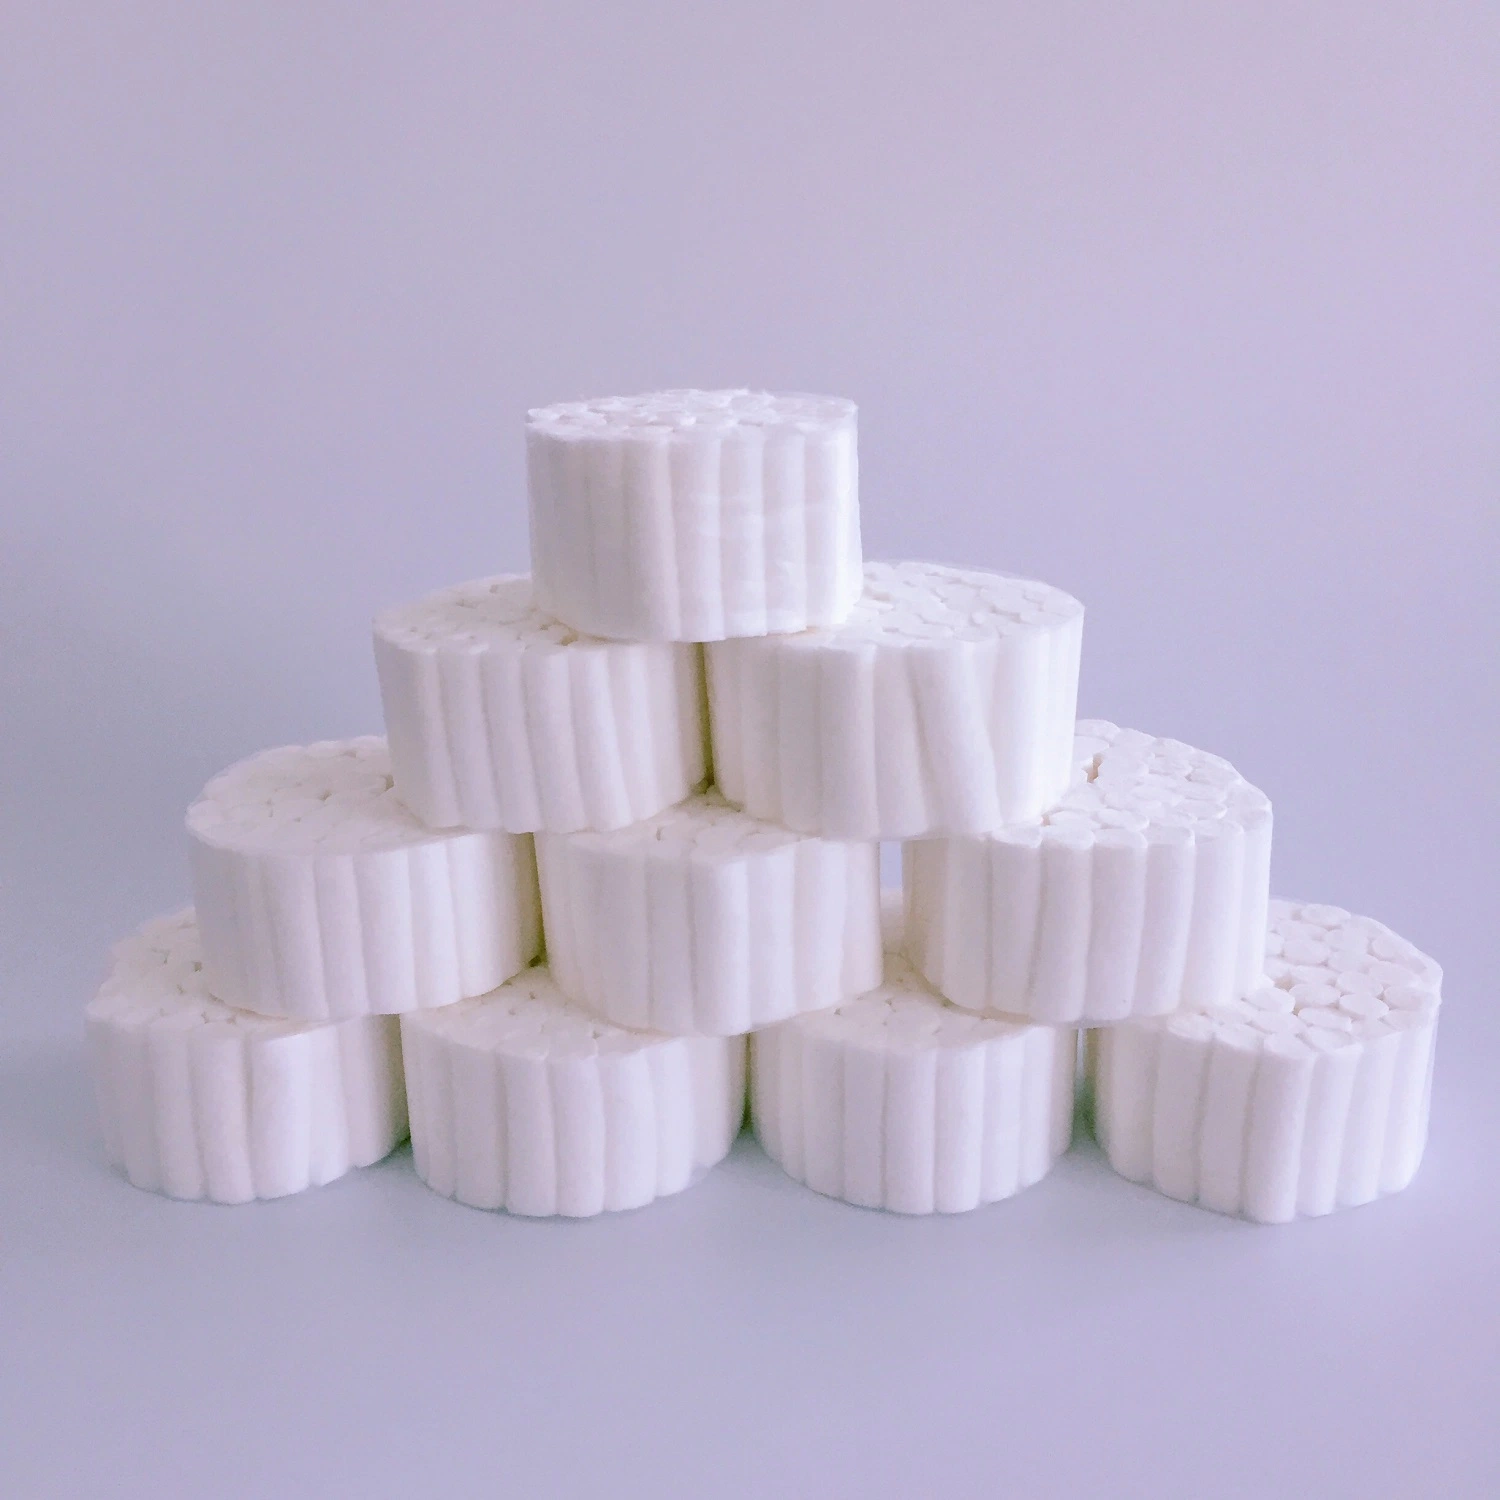 Rolo de algodão Dental absorvente de uso médico descartável